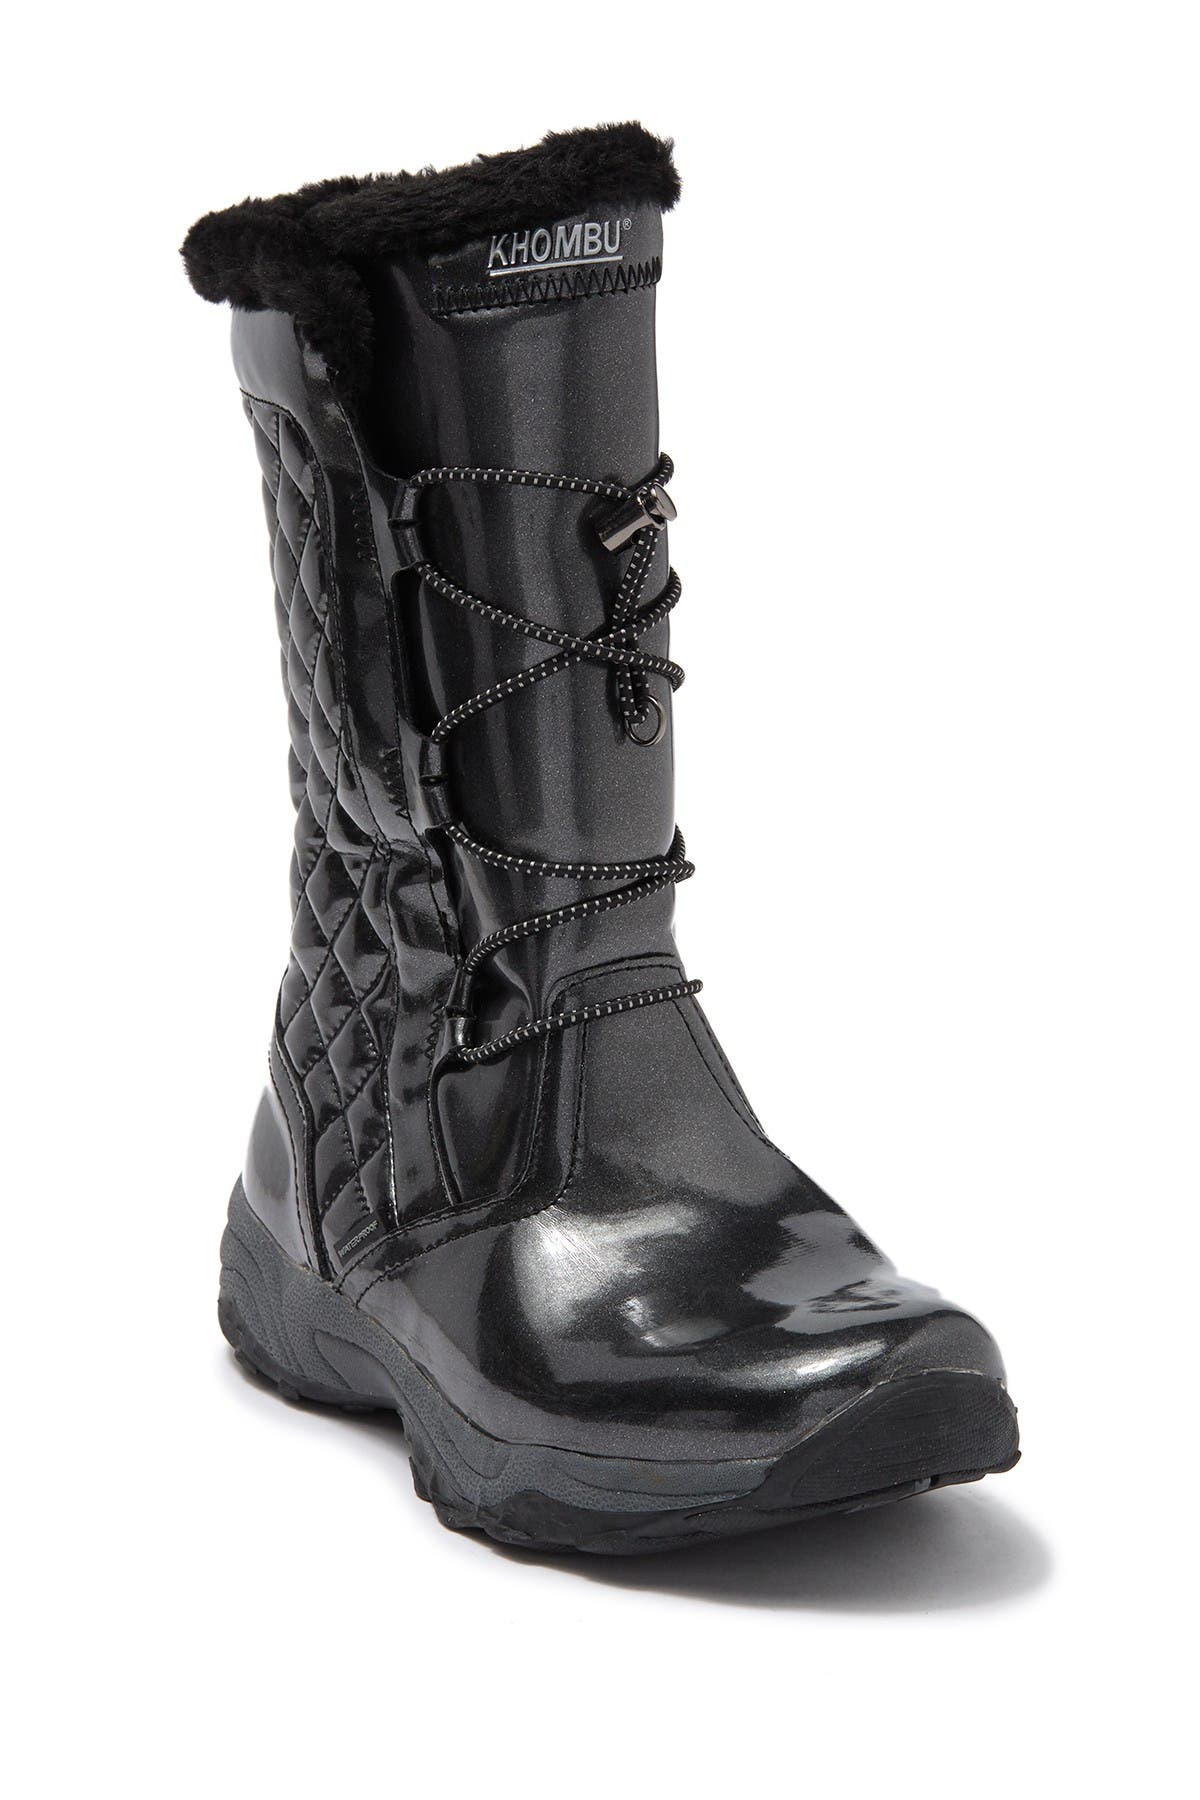 khombu rain boots